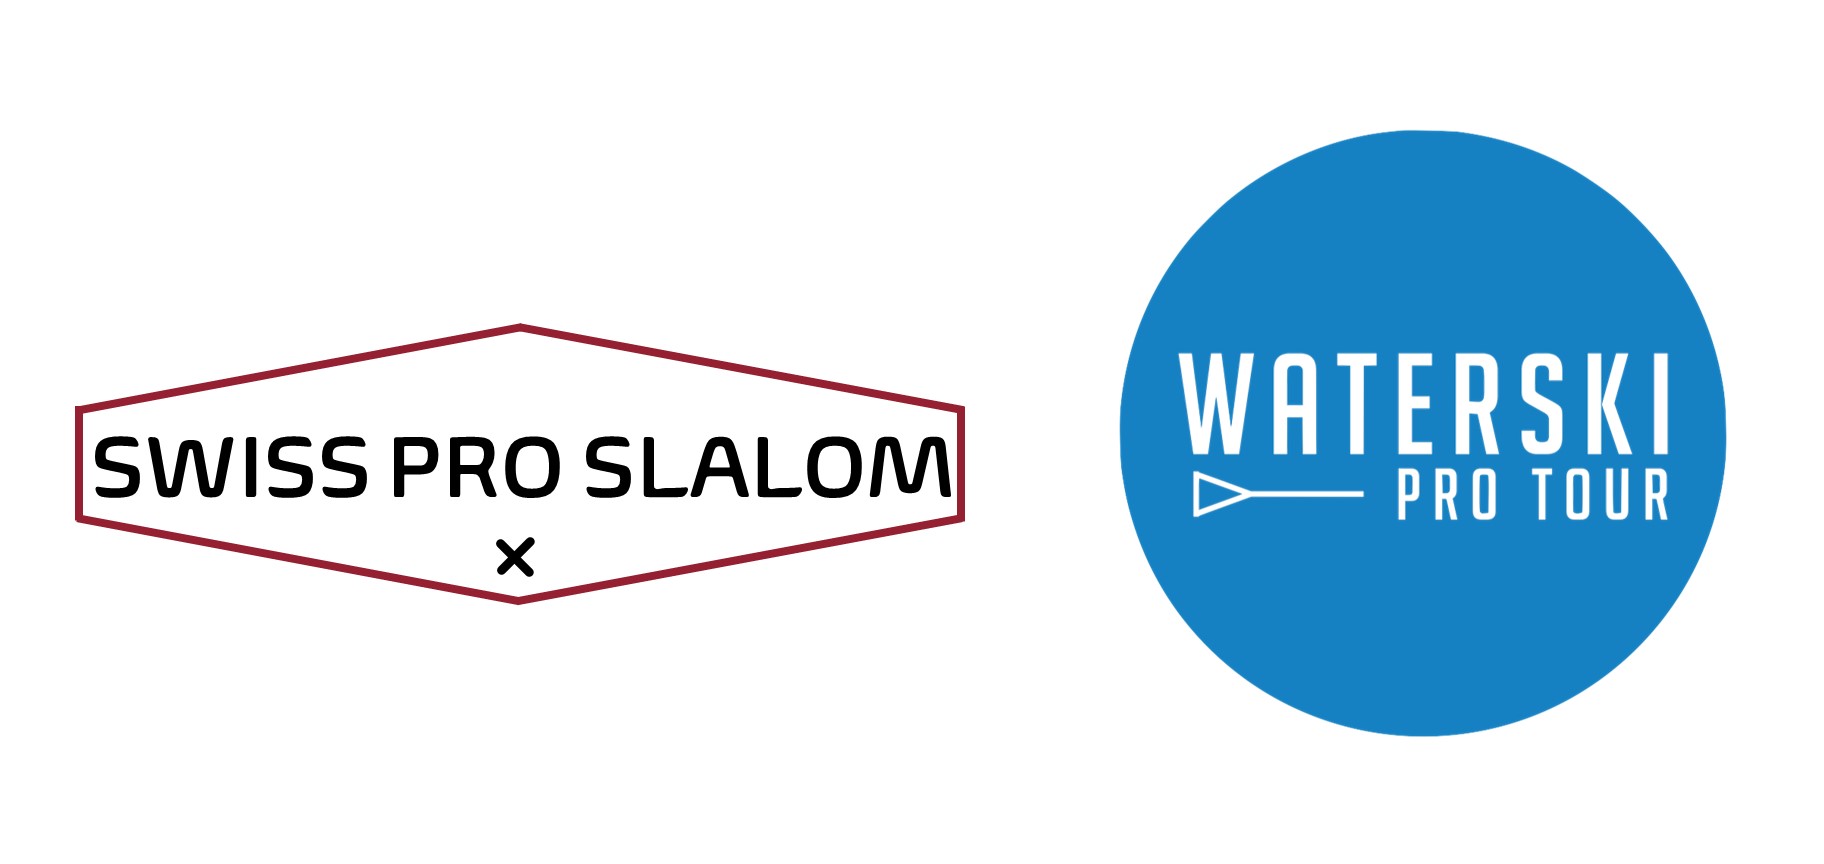 Swiss Pro Slalom - Waterski Pro Tour